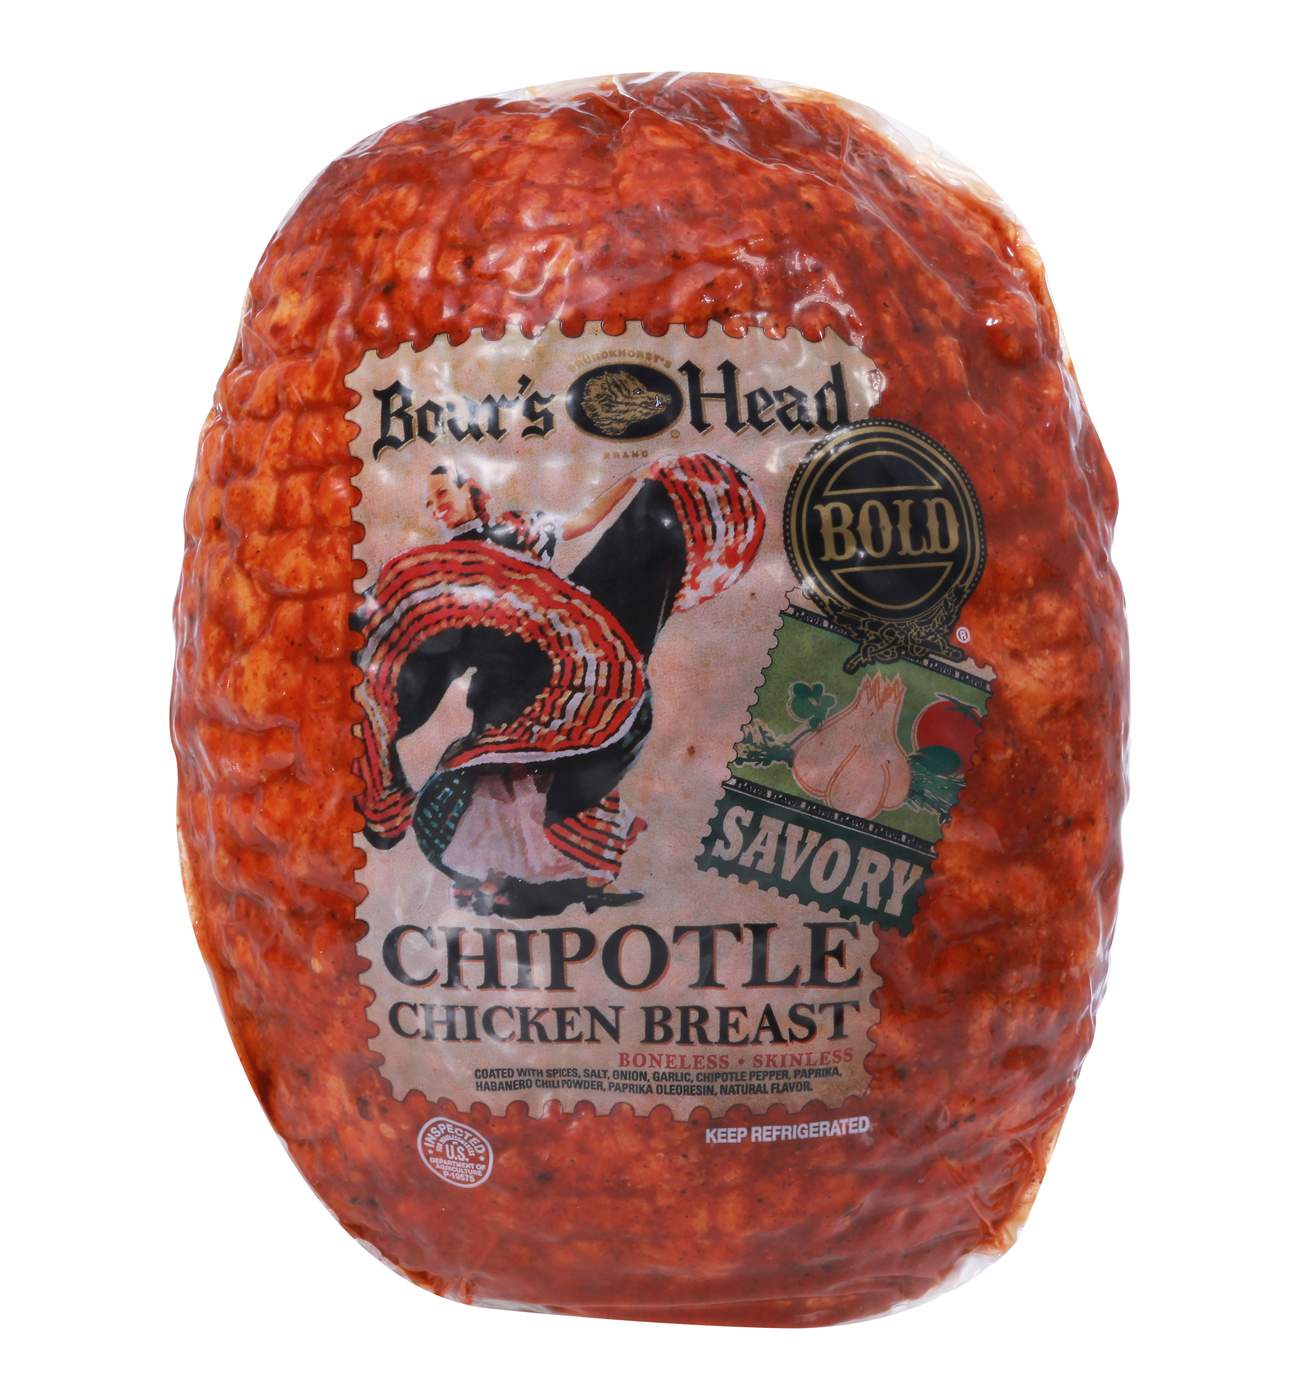 Boar's Head Bold Chipotle Chicken Breast; image 1 of 2